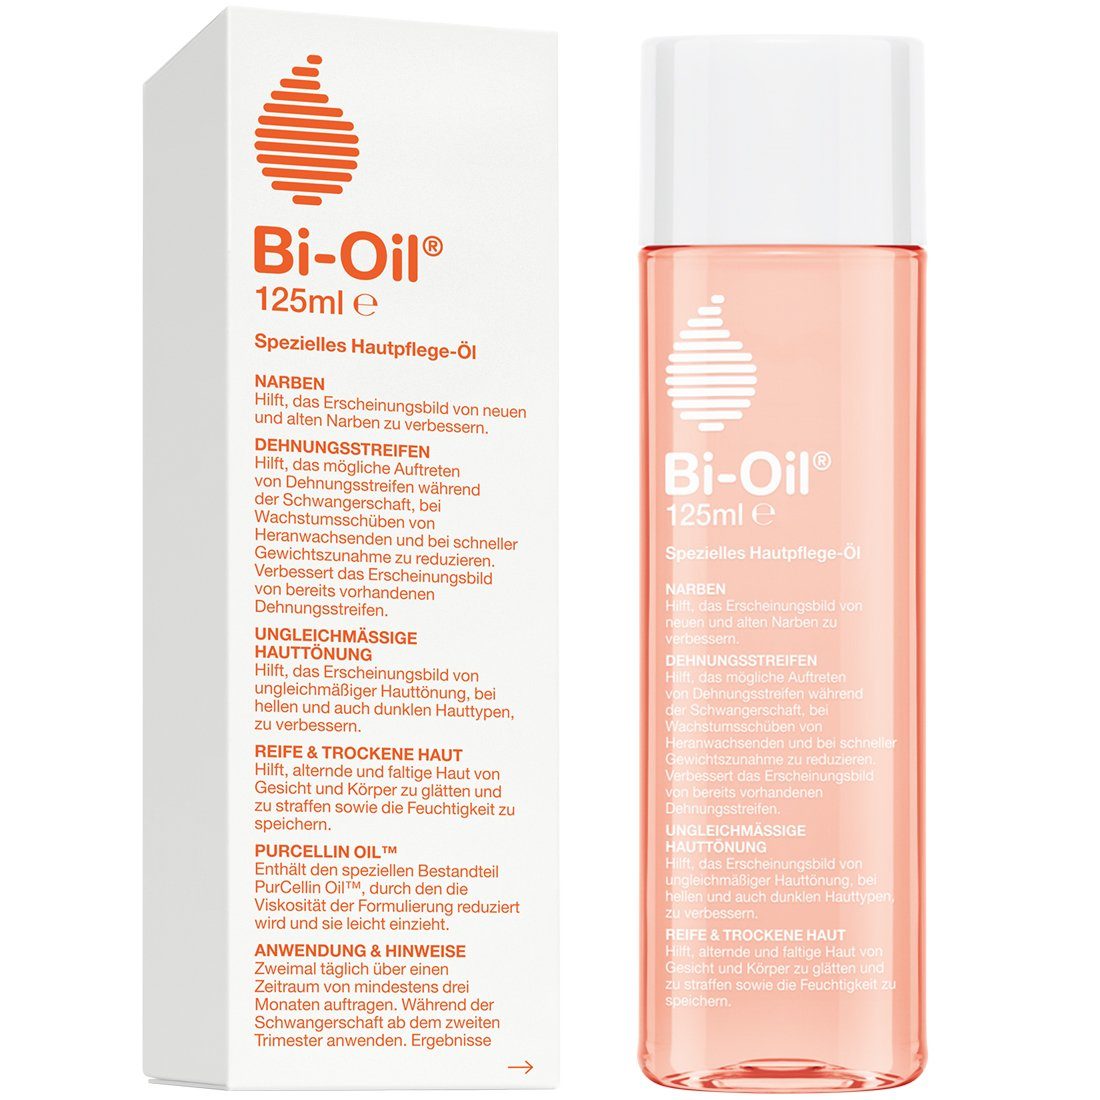 Damen Hautpflege BI-OIL Körperöl spezielles Hautpflegeöl hilft bei Dehnungsstreifen und Narben Hilfe bei trockener Haut und bei 